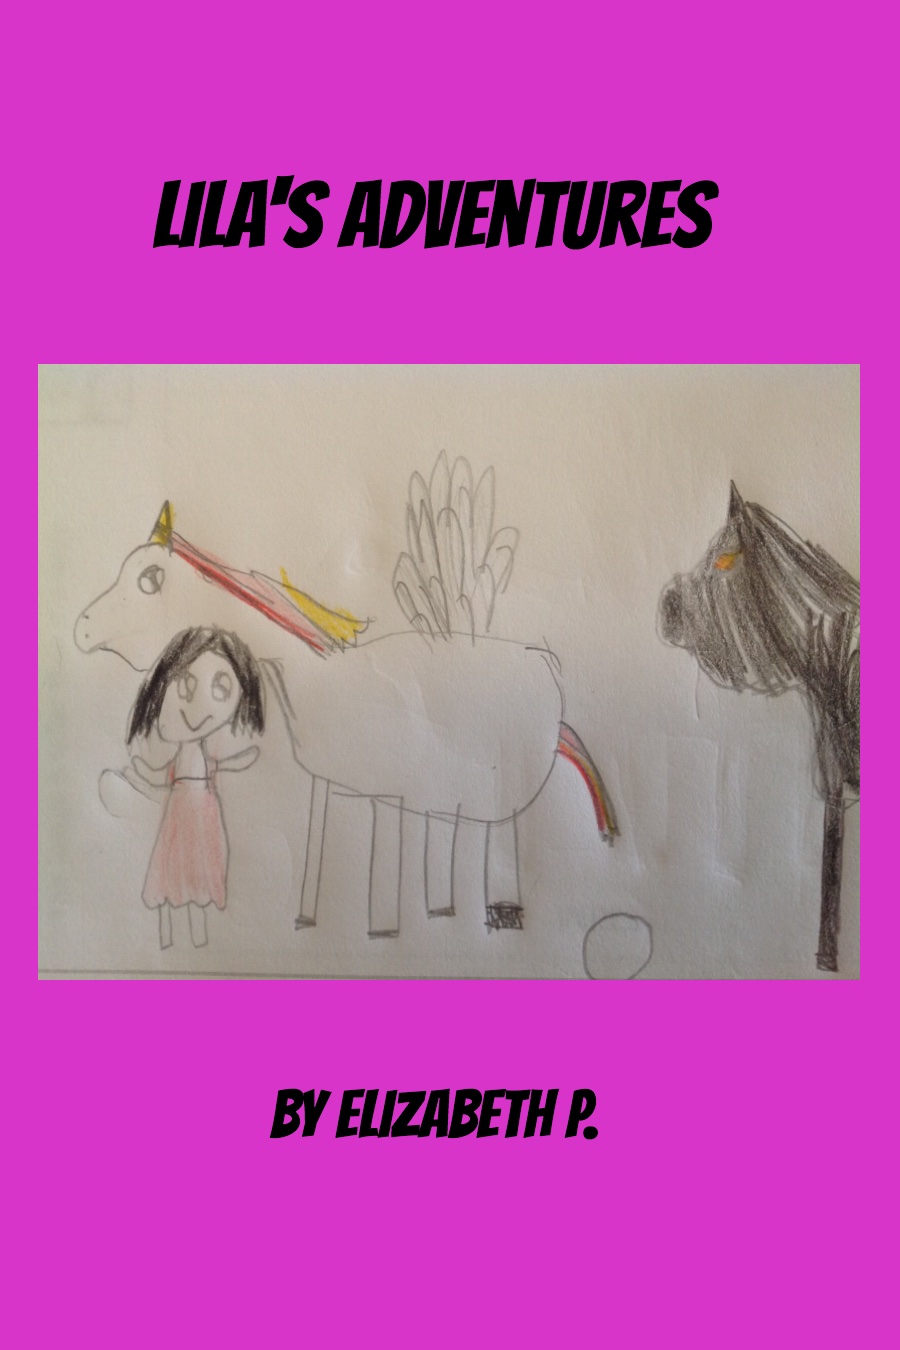 Lila’s Adventures by Elizabeth P